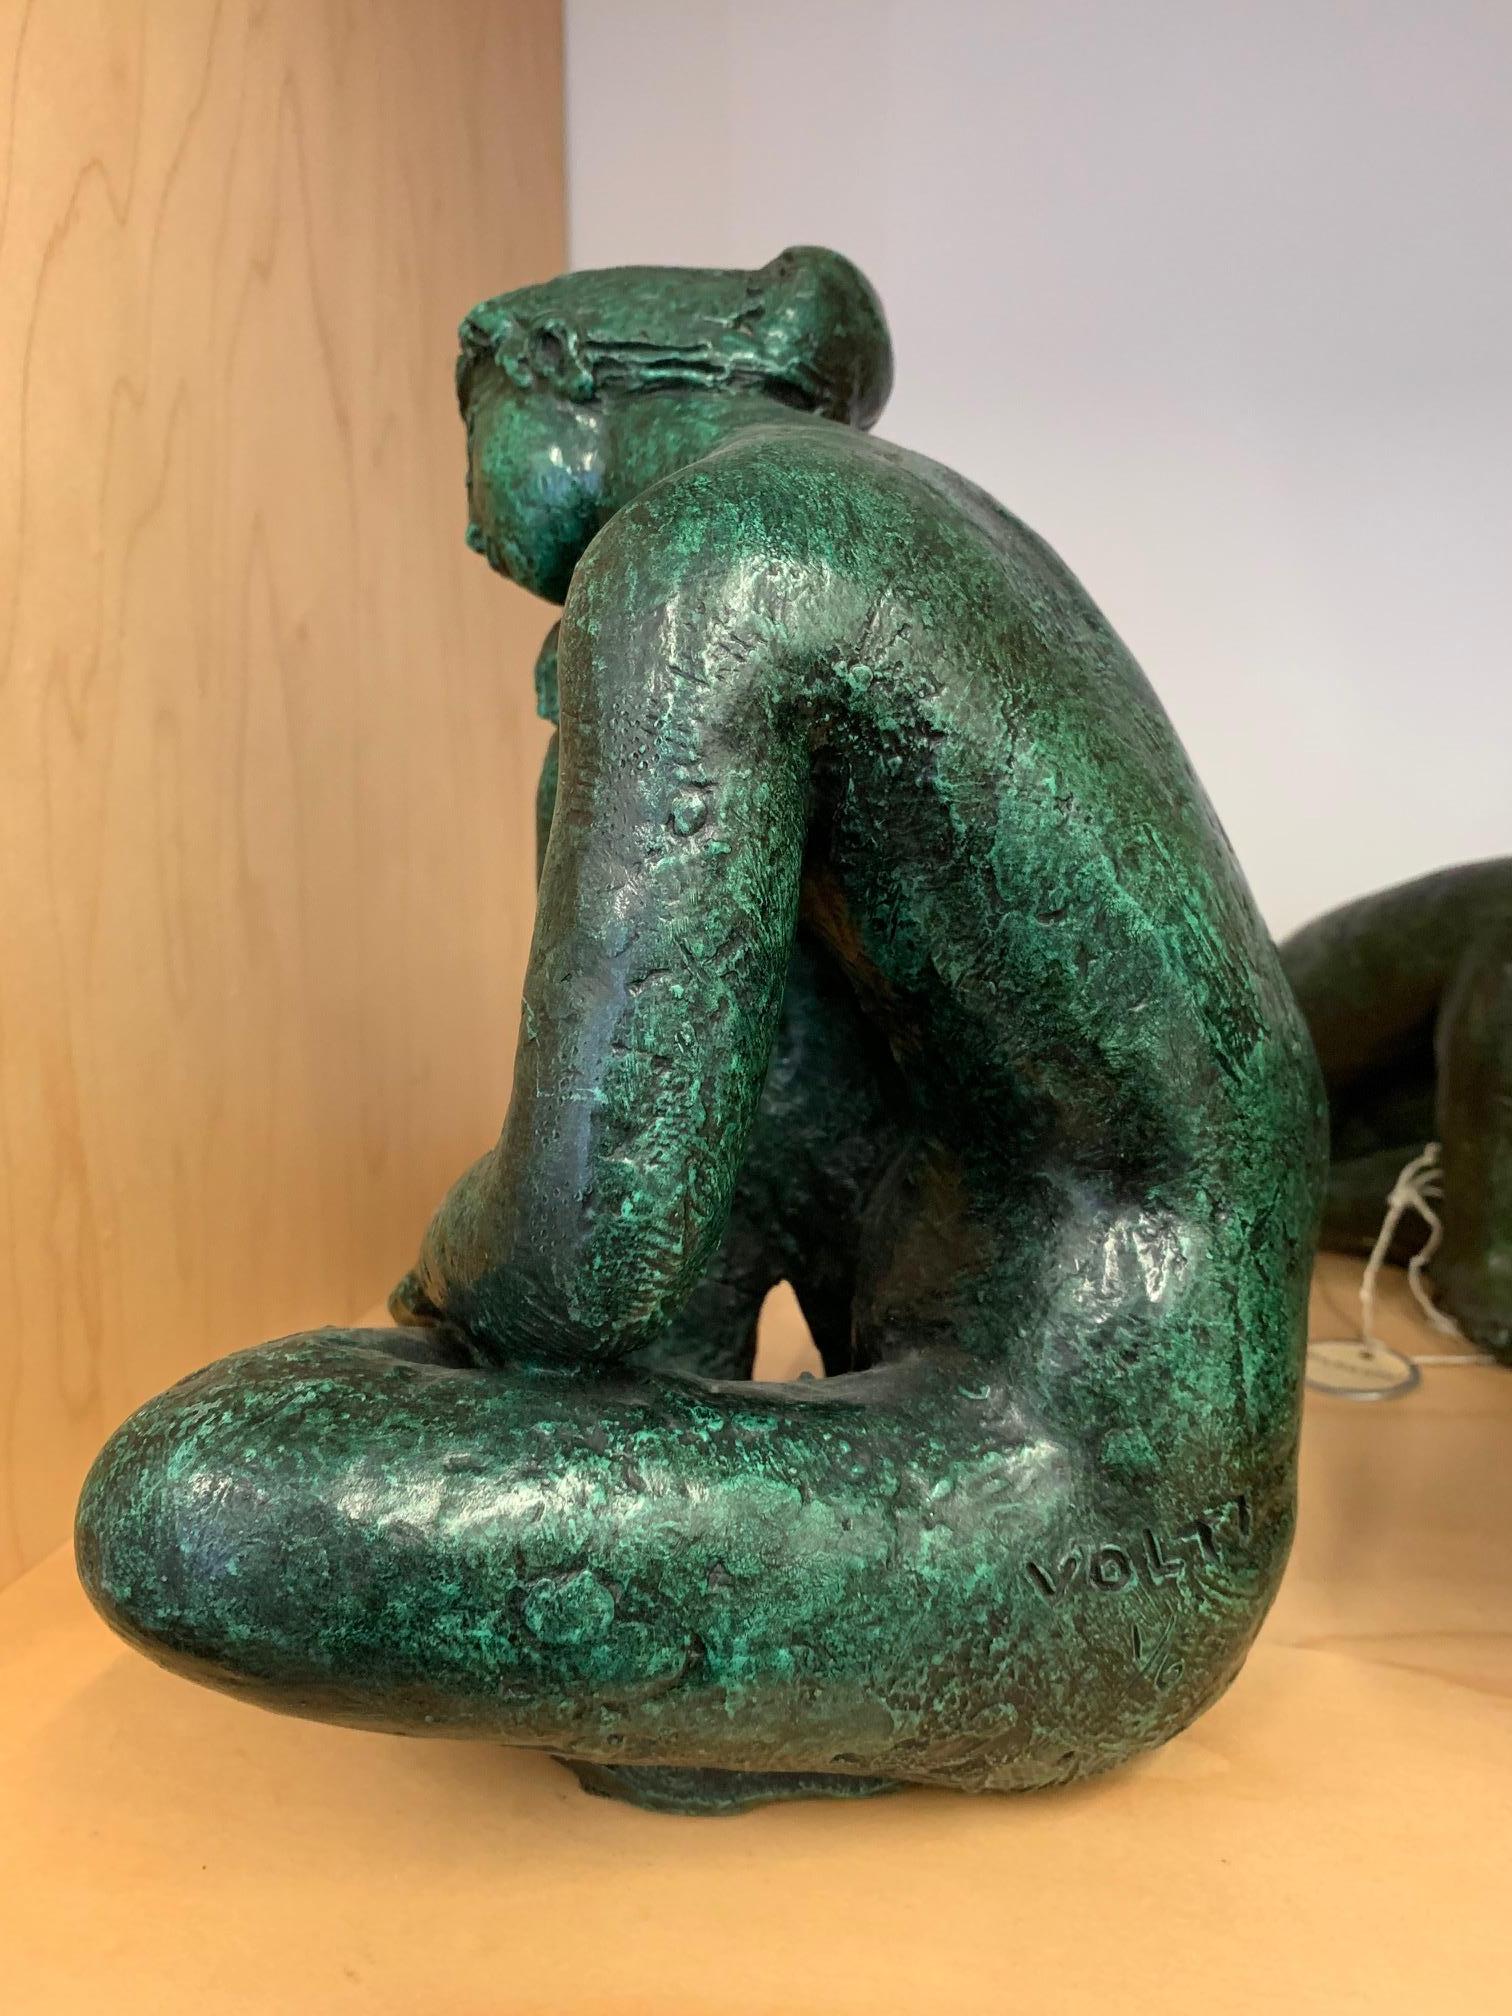 Cette petite sculpture figurative féminine en bronze d'Antoniucci Volti a une belle patine verte et est une édition 1 de 6. 

Antoniucci Volti, de son vrai nom Voltigero, est un sculpteur, dessinateur et graveur français d'origine italienne, né en